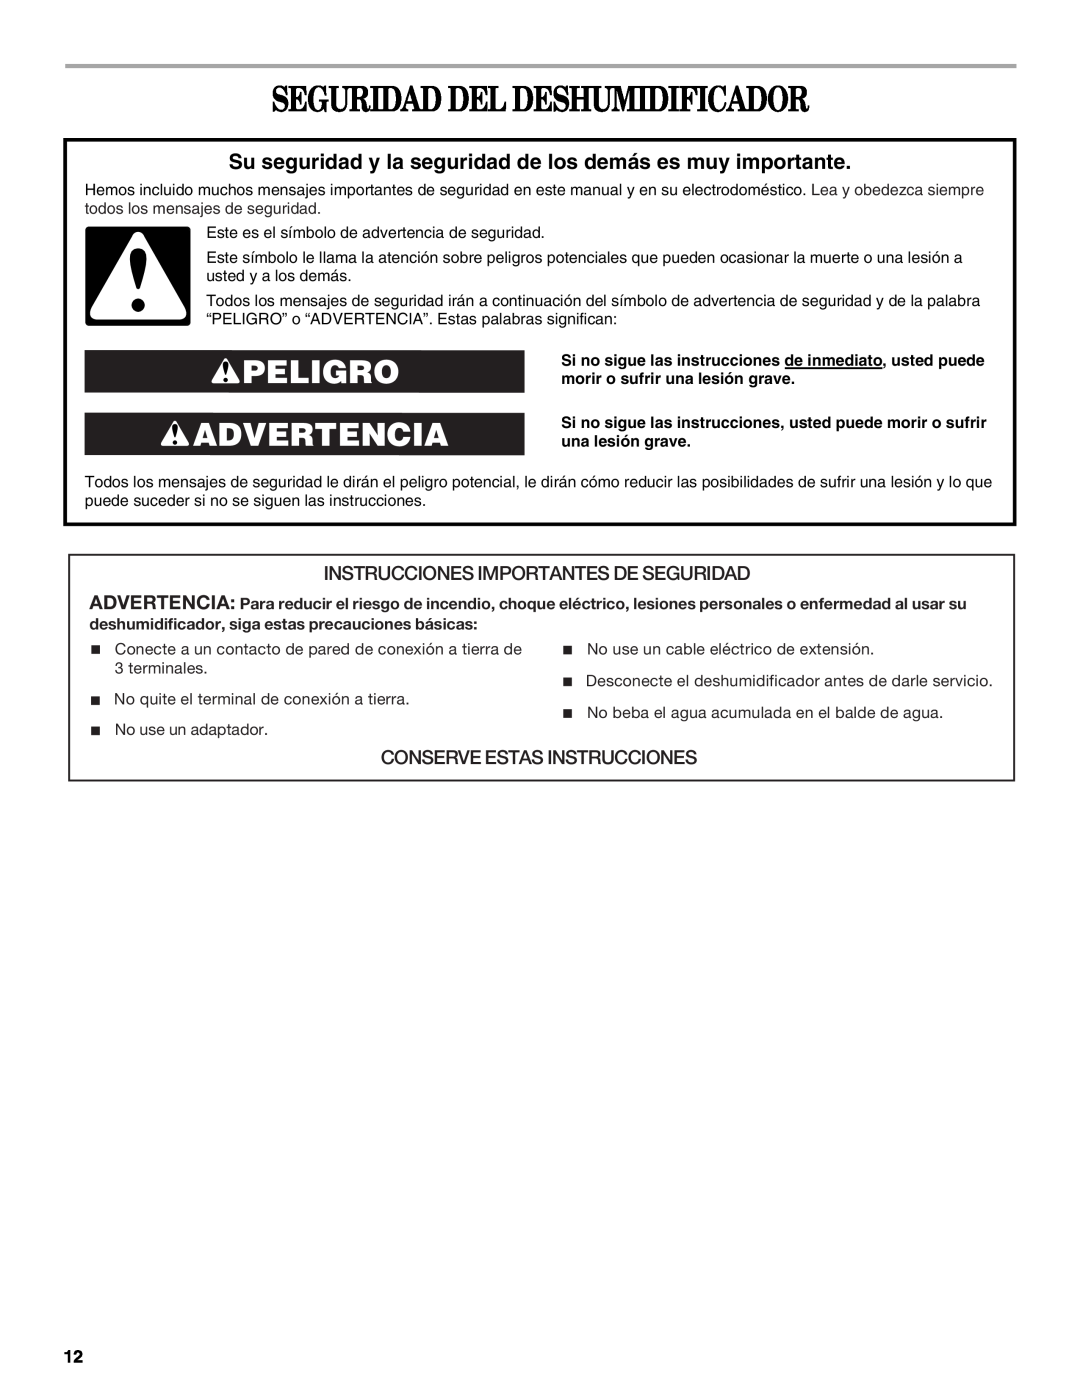 Whirlpool AD35DSS1 manual Seguridad Del Deshumidificador, Peligro Advertencia, Instrucciones Importantes De Seguridad 